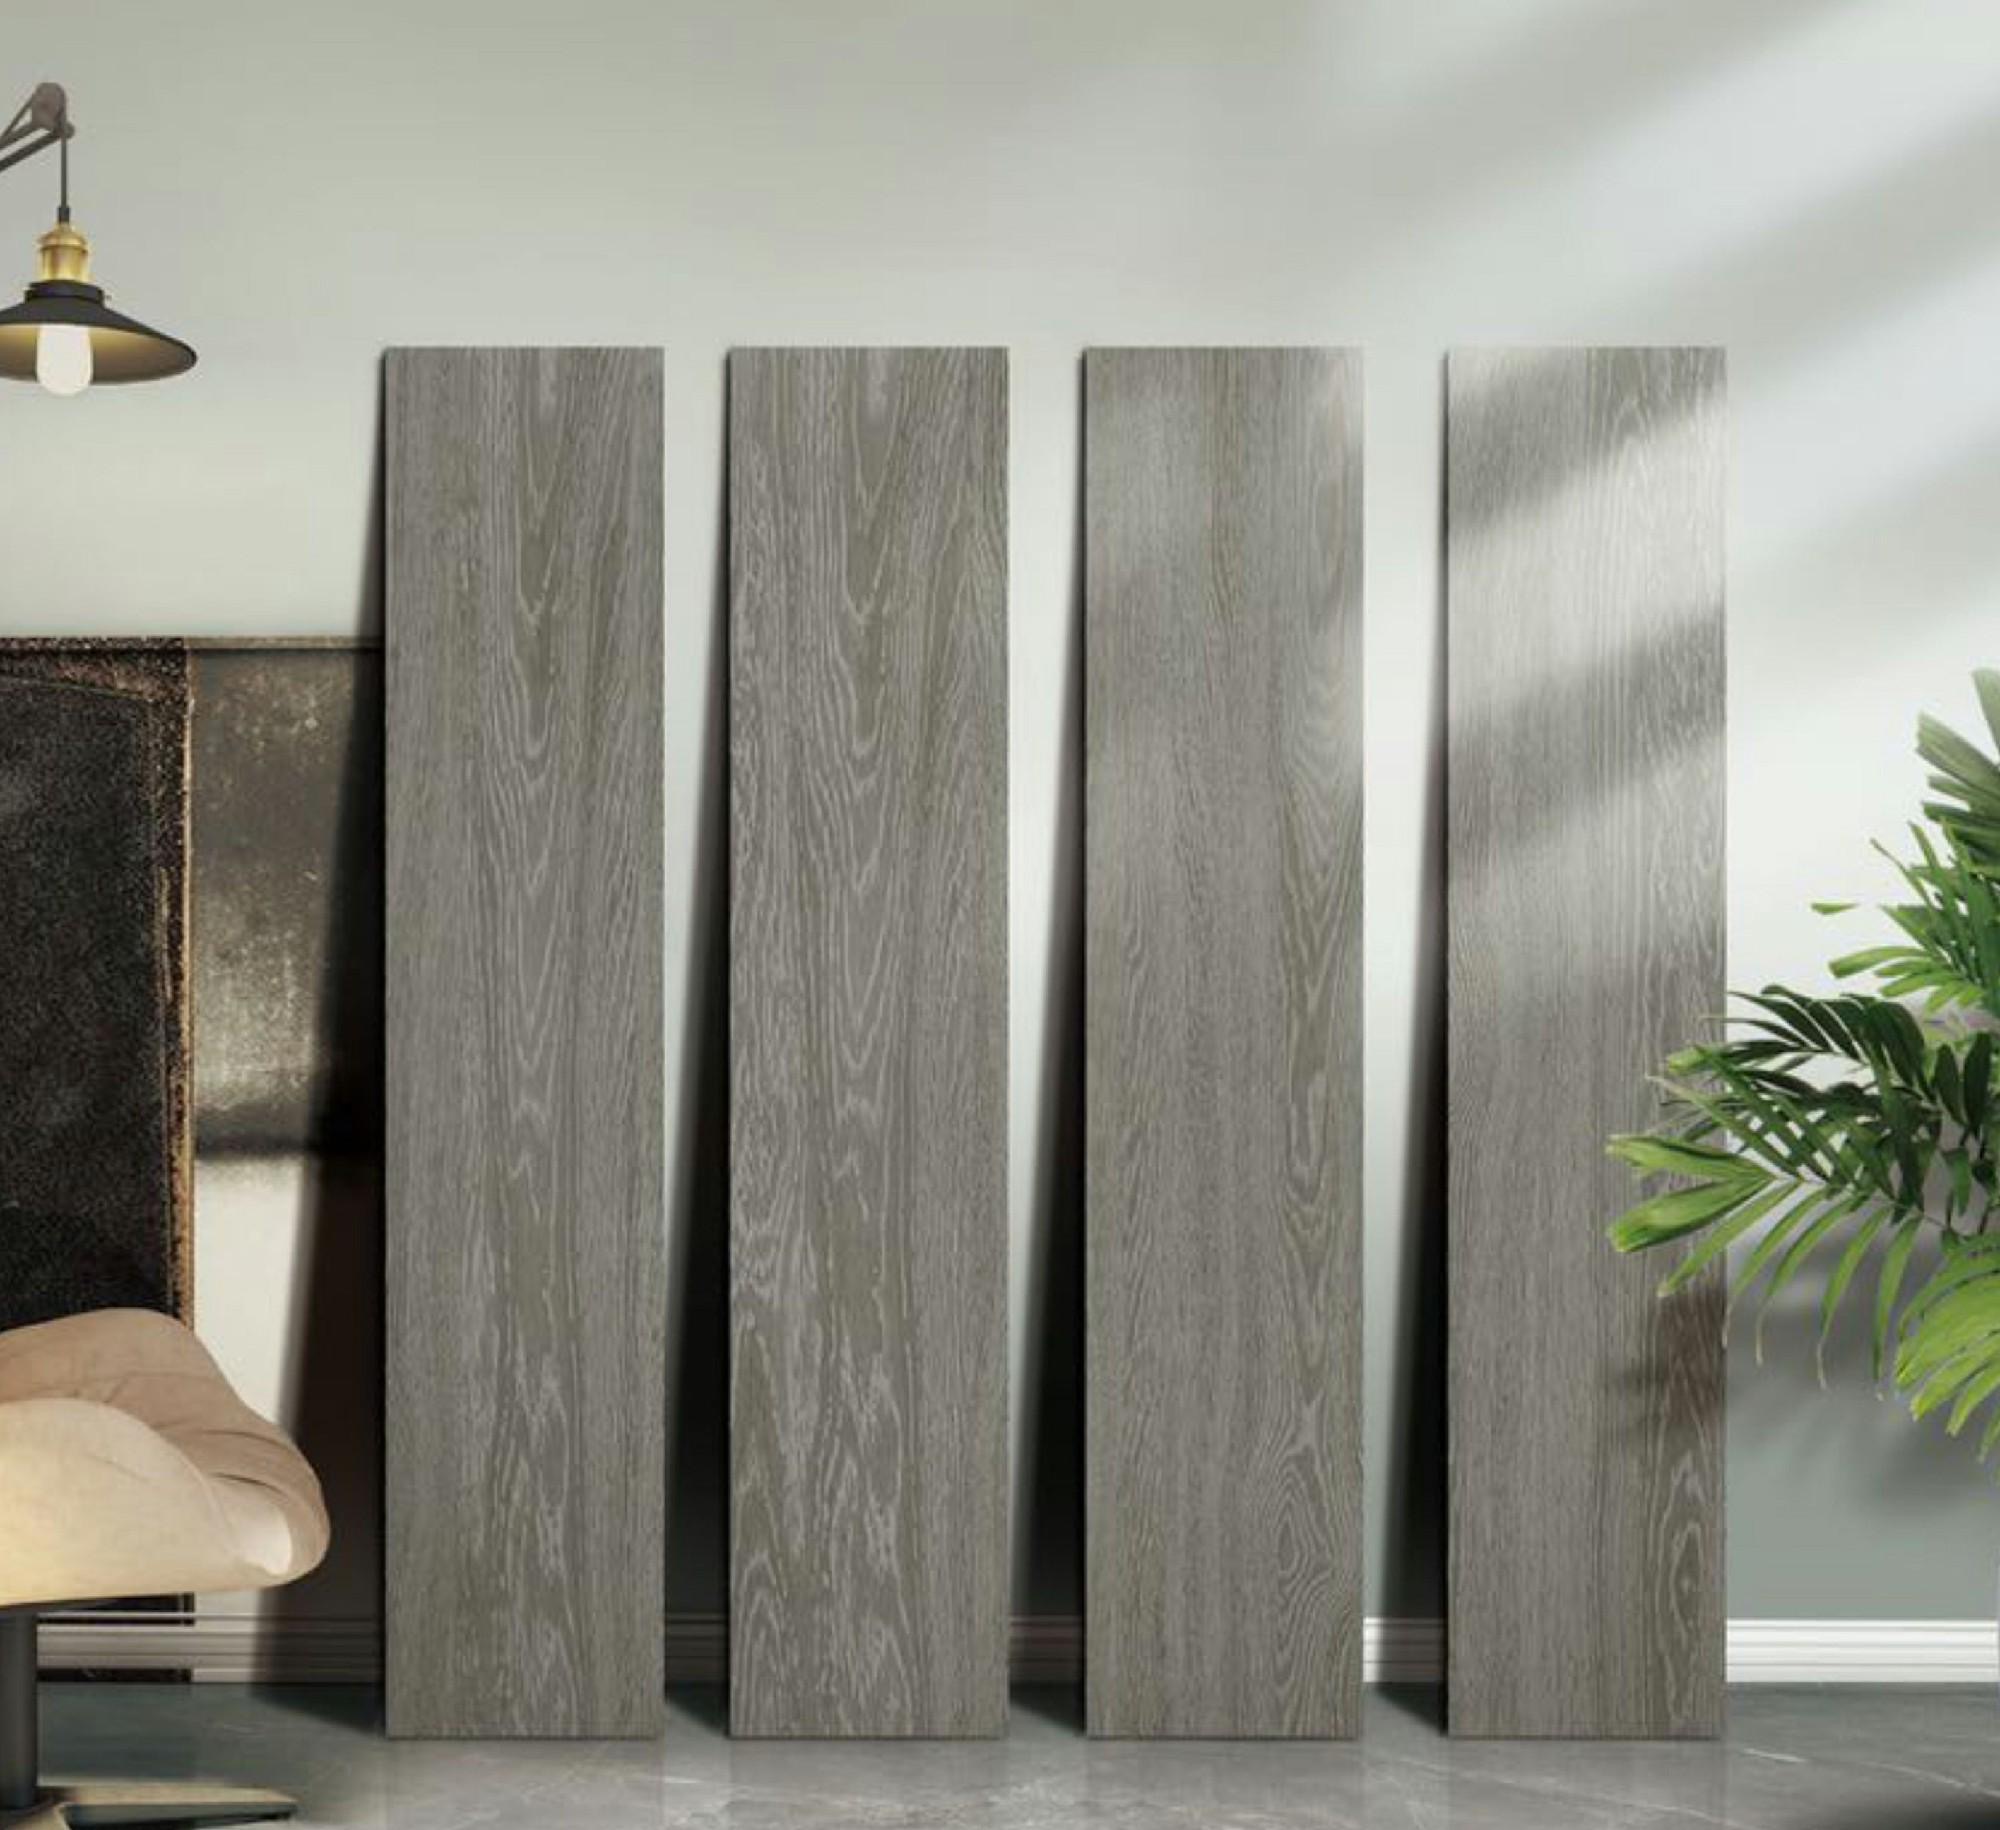 15x90cm 自然木紋磚 瓷磚 仿古磚 - SE00005SC